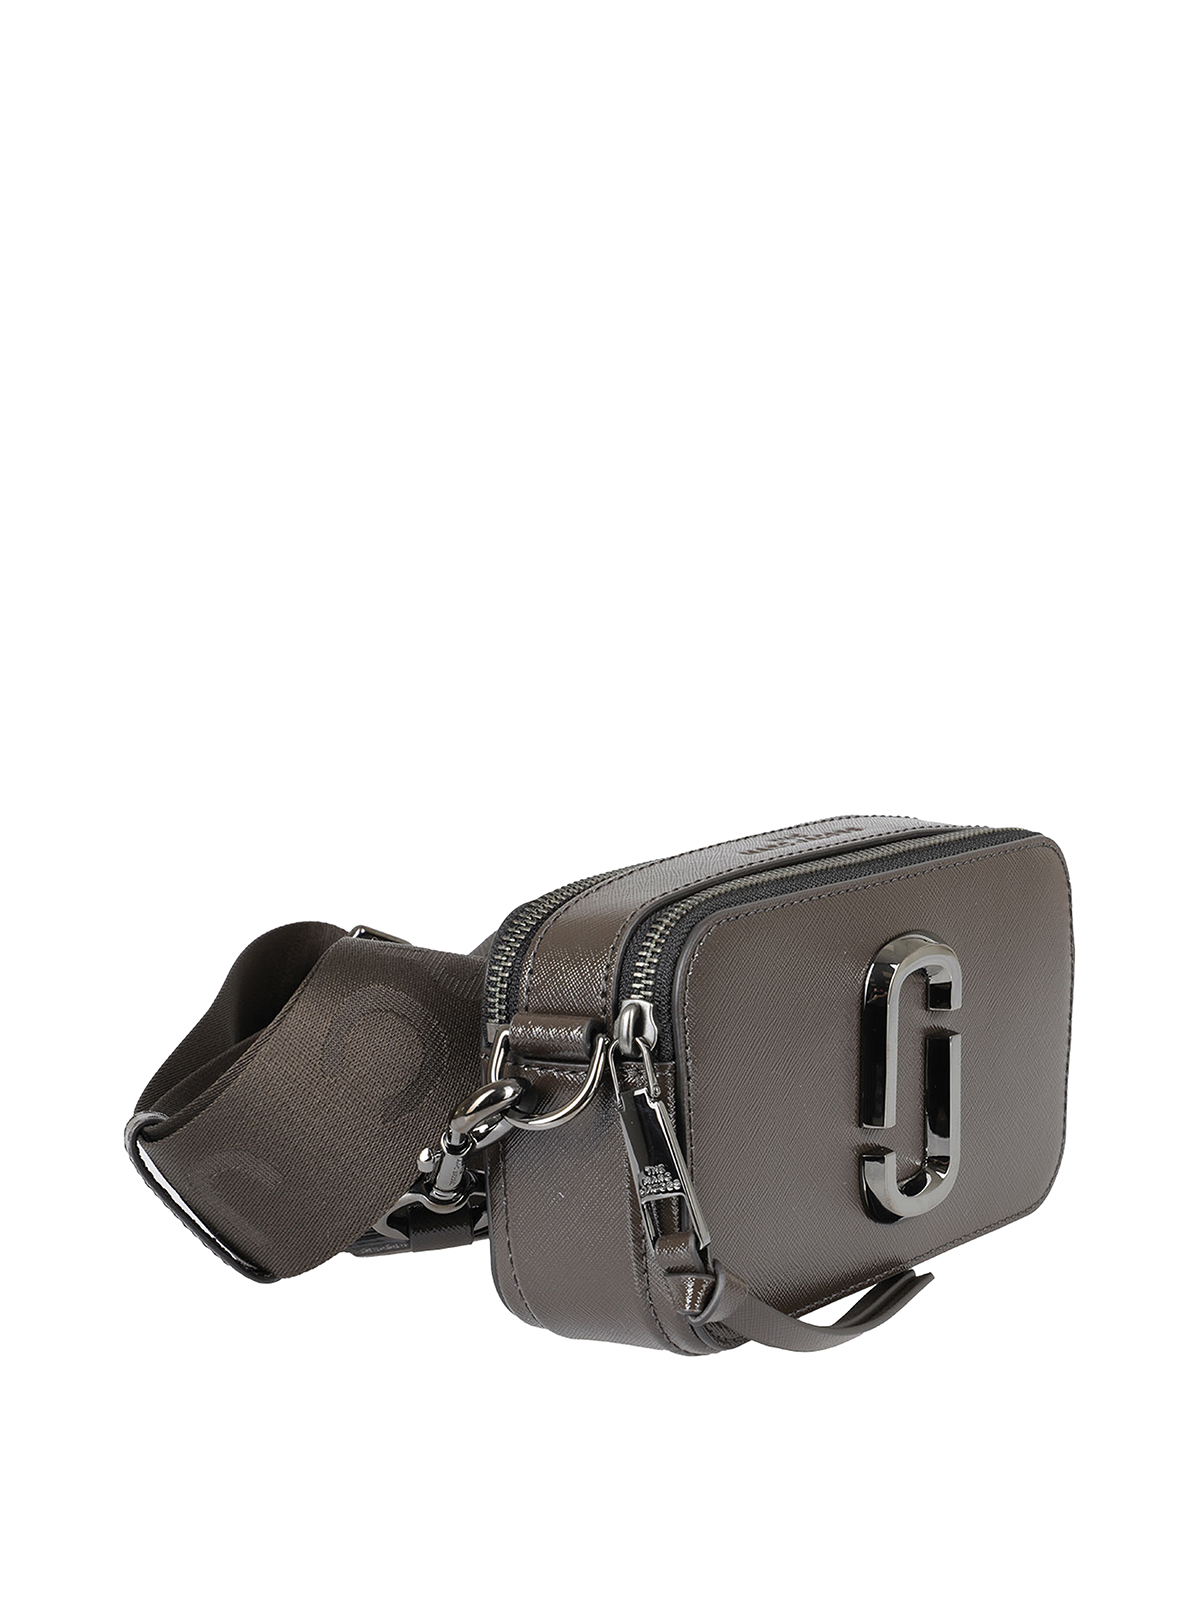 Marc Jacobs The Snapshot DTM Camera Bag Metallic Grey